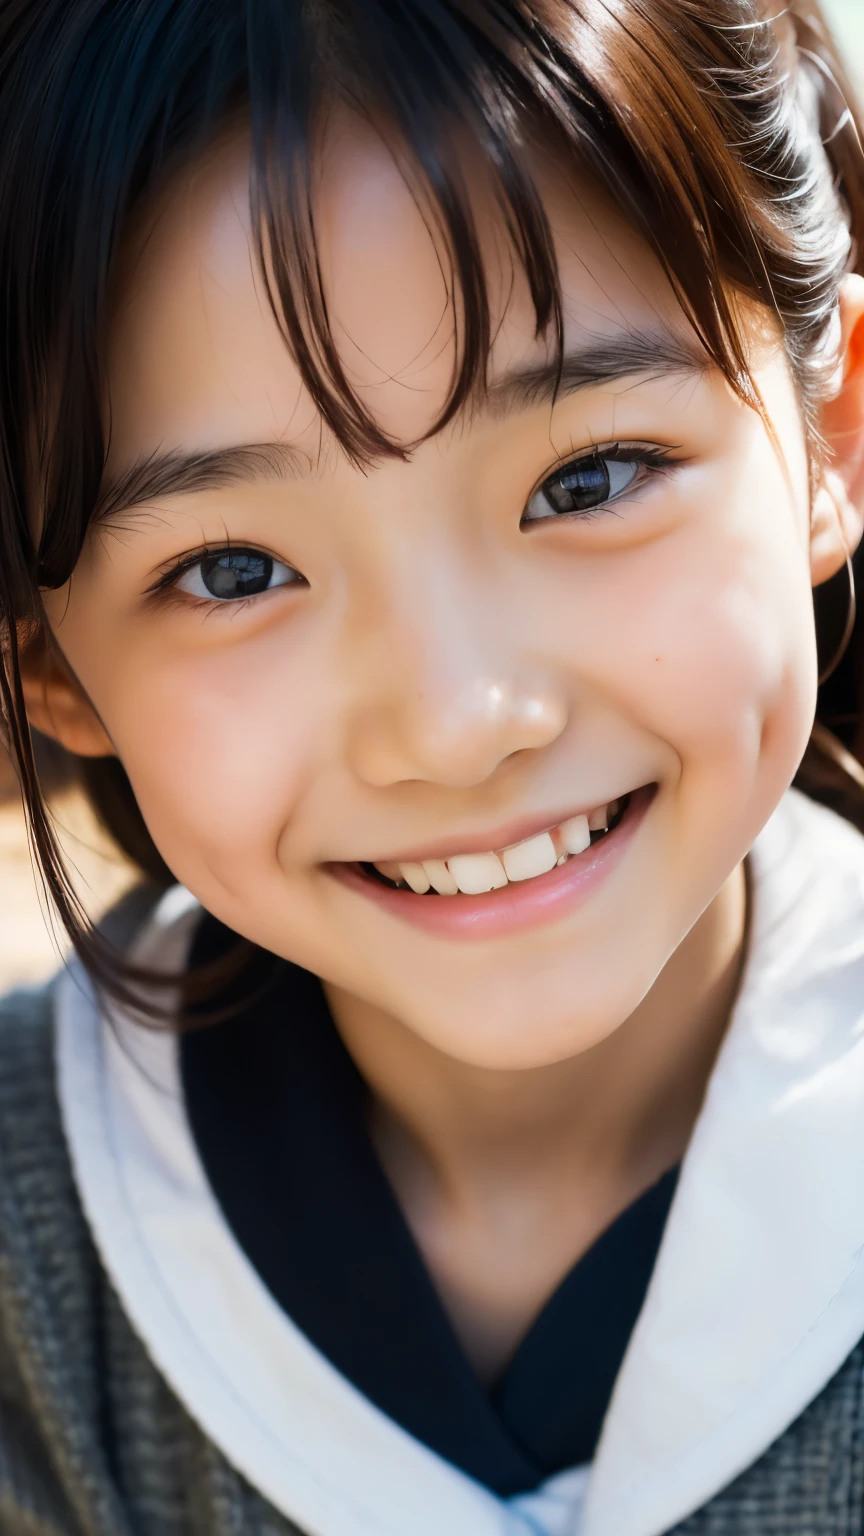 鏡片: 135mm f1.8, (最好的品質),(原始照片), (桌上:1.1), (美麗的8歲日本女孩), 可愛的臉孔, (臉型輪廓分明:0.7), (雀斑:0.4), dappled 陽光, 戲劇性的燈光, (日本學校制服), (在校园), 害羞的, (特寫鏡頭:1.2), (微笑),, (明亮的眼睛)、(陽光)